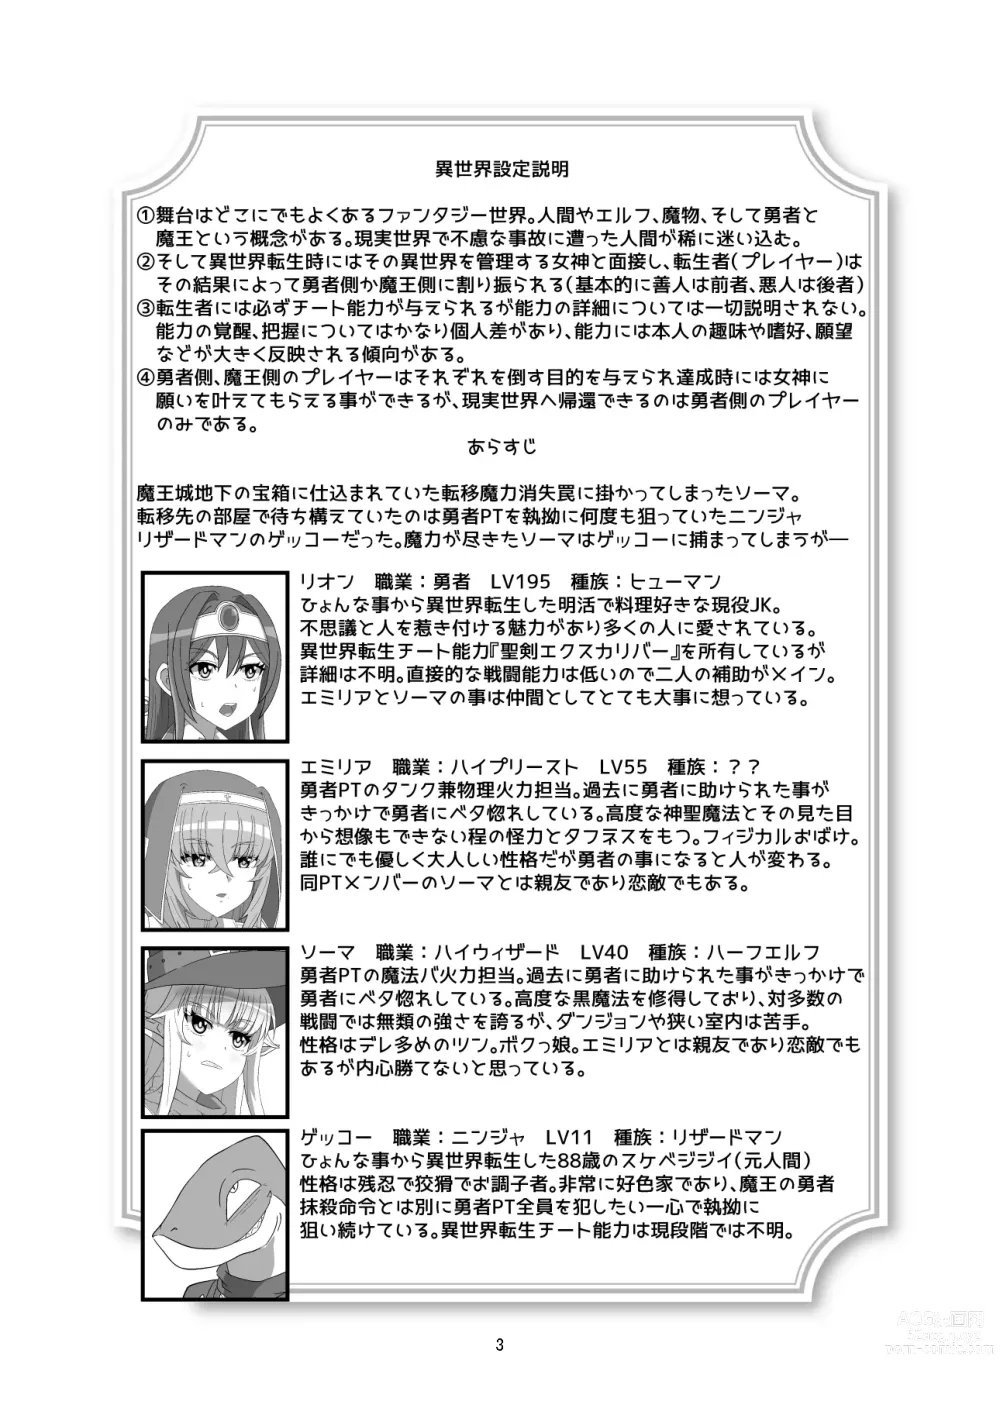 Page 2 of doujinshi Tokage no Shippo - Lizards Tail